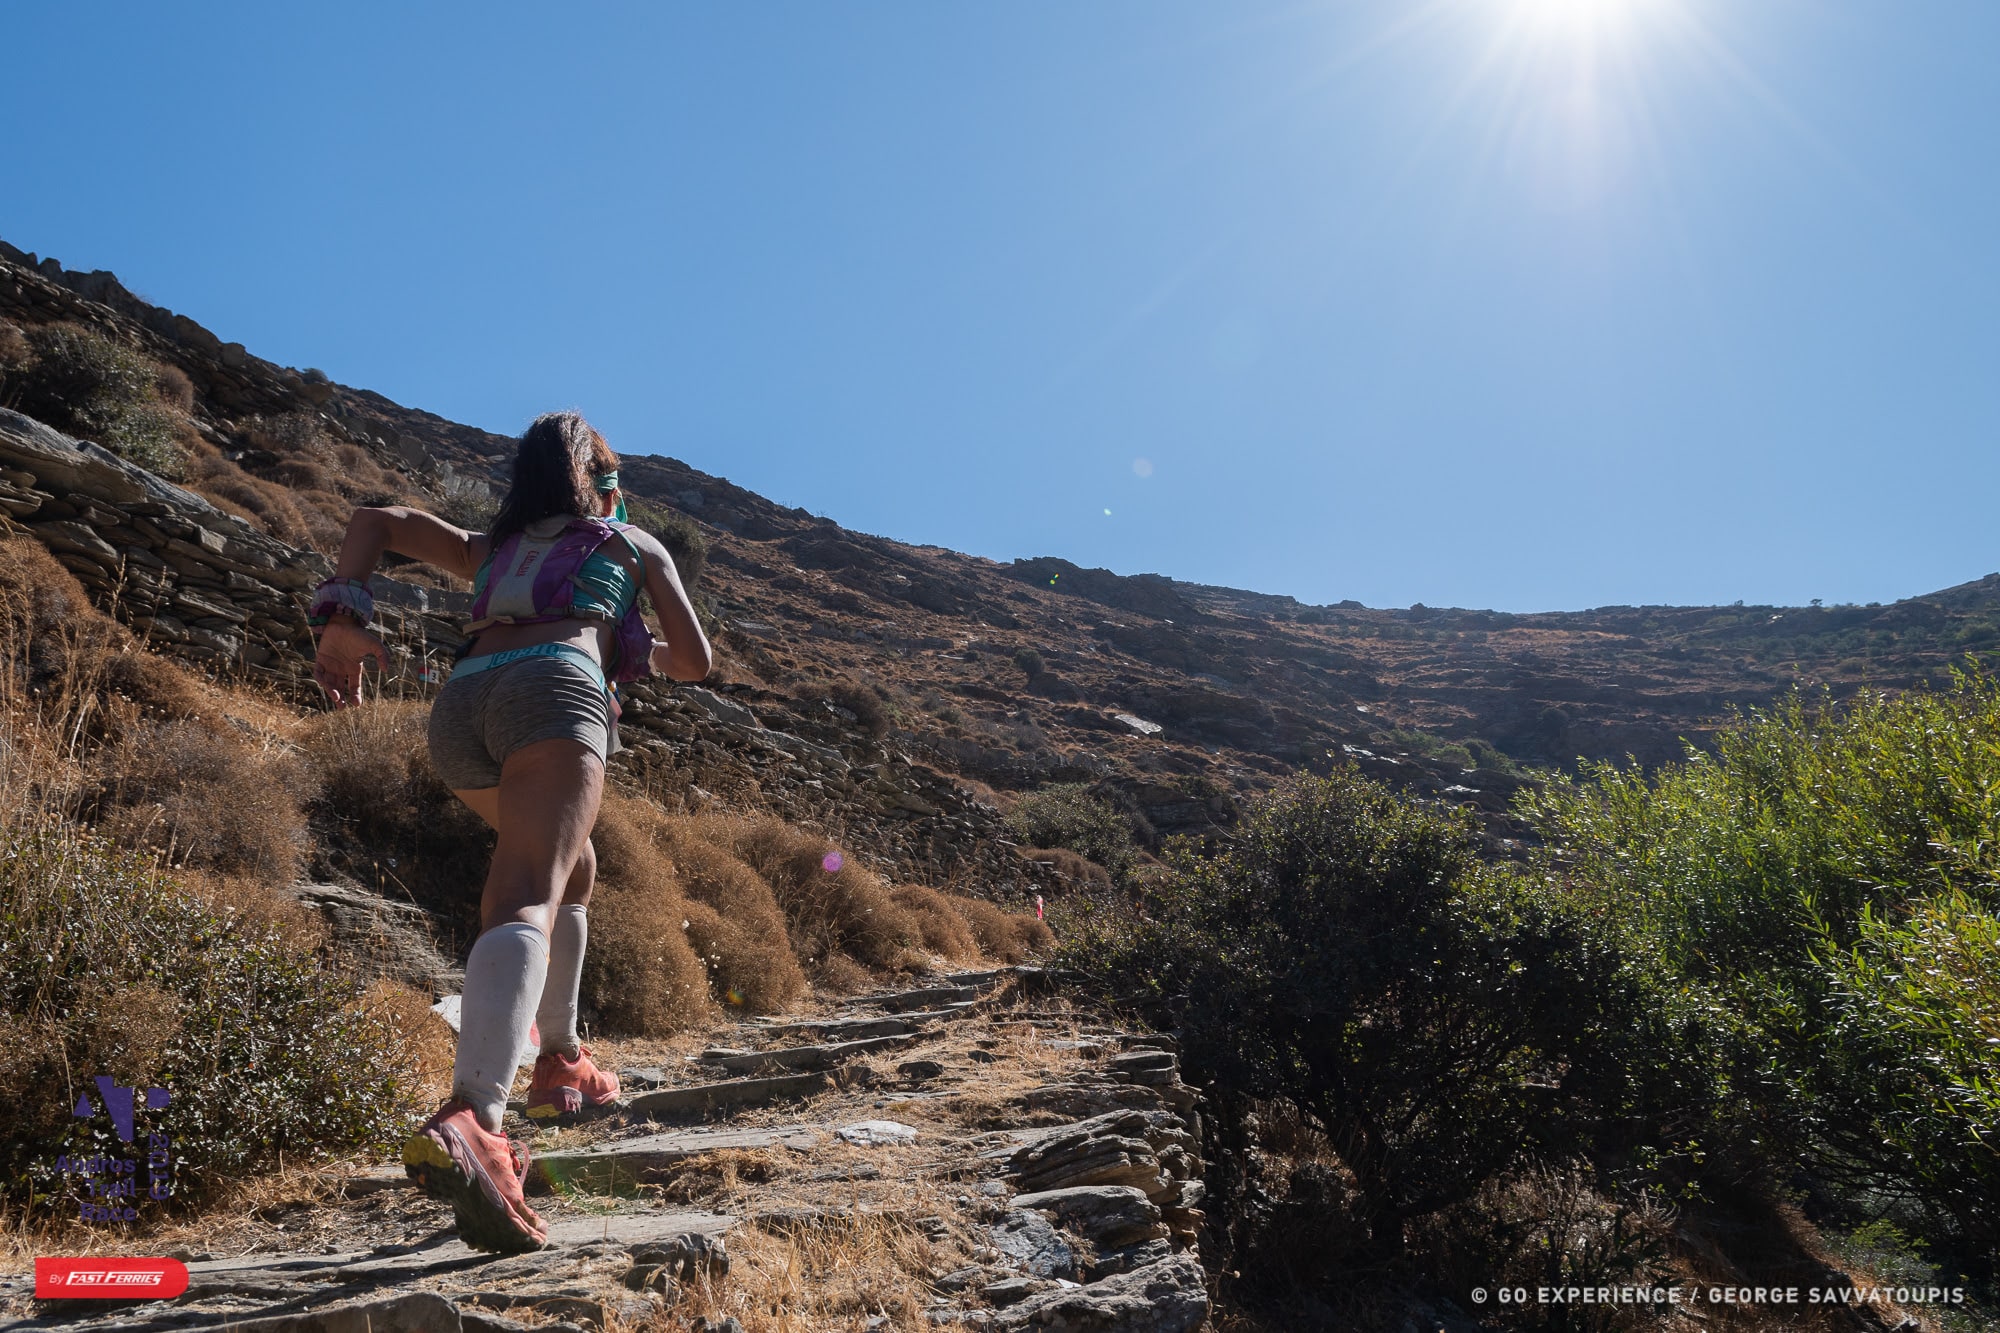 4ο Andros Trail Race 2019- Ακόμα μία επιτυχημένη διοργάνωση